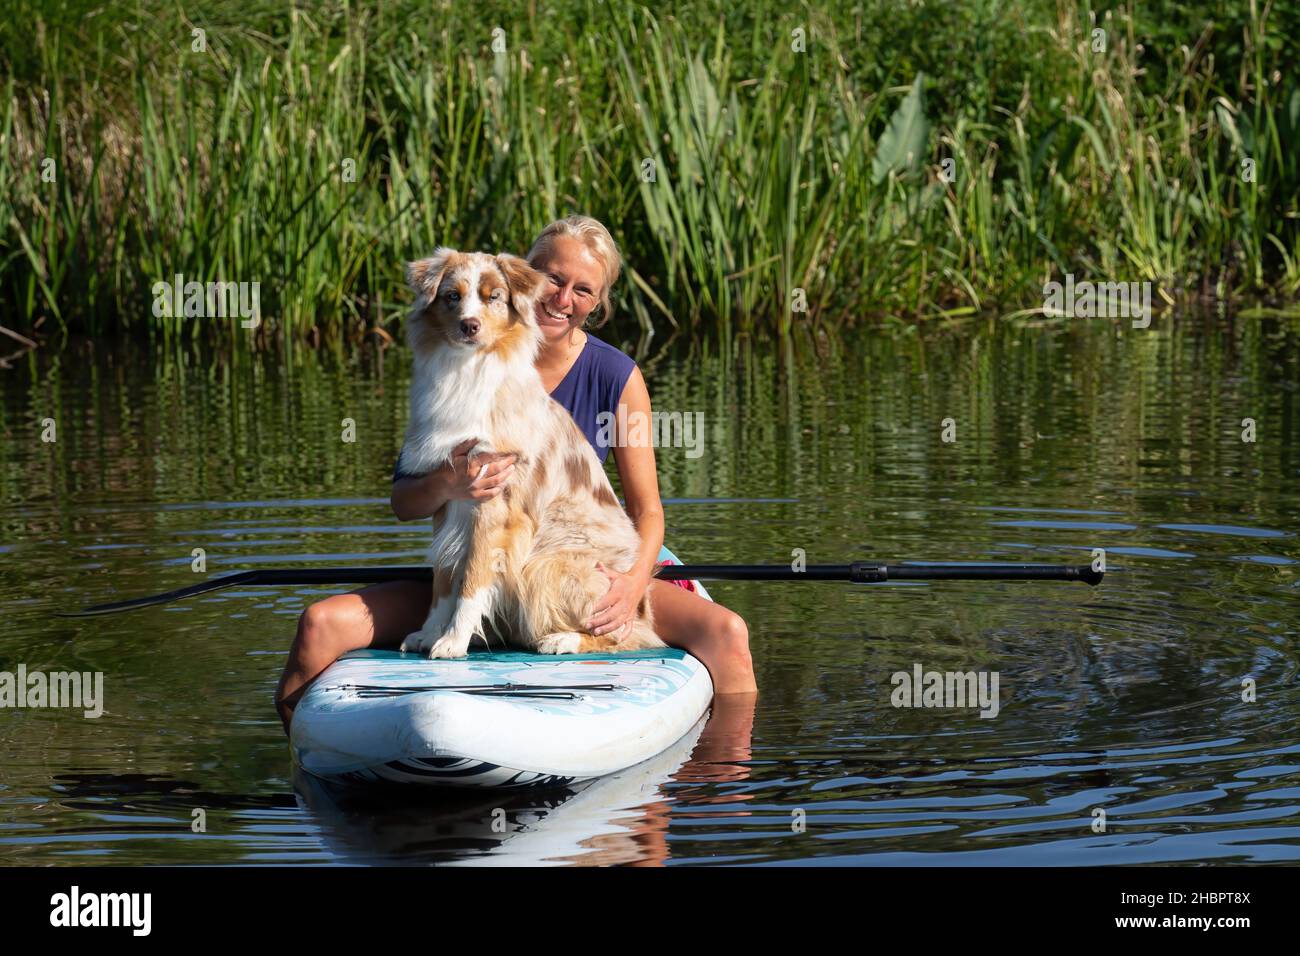 Peize, Olanda 16 luglio 2021: Una donna in scatola in una t-shirt con fondo bikini su una tavola sup. Con un cane Pastore australiano. Pagaiando sul Foto Stock